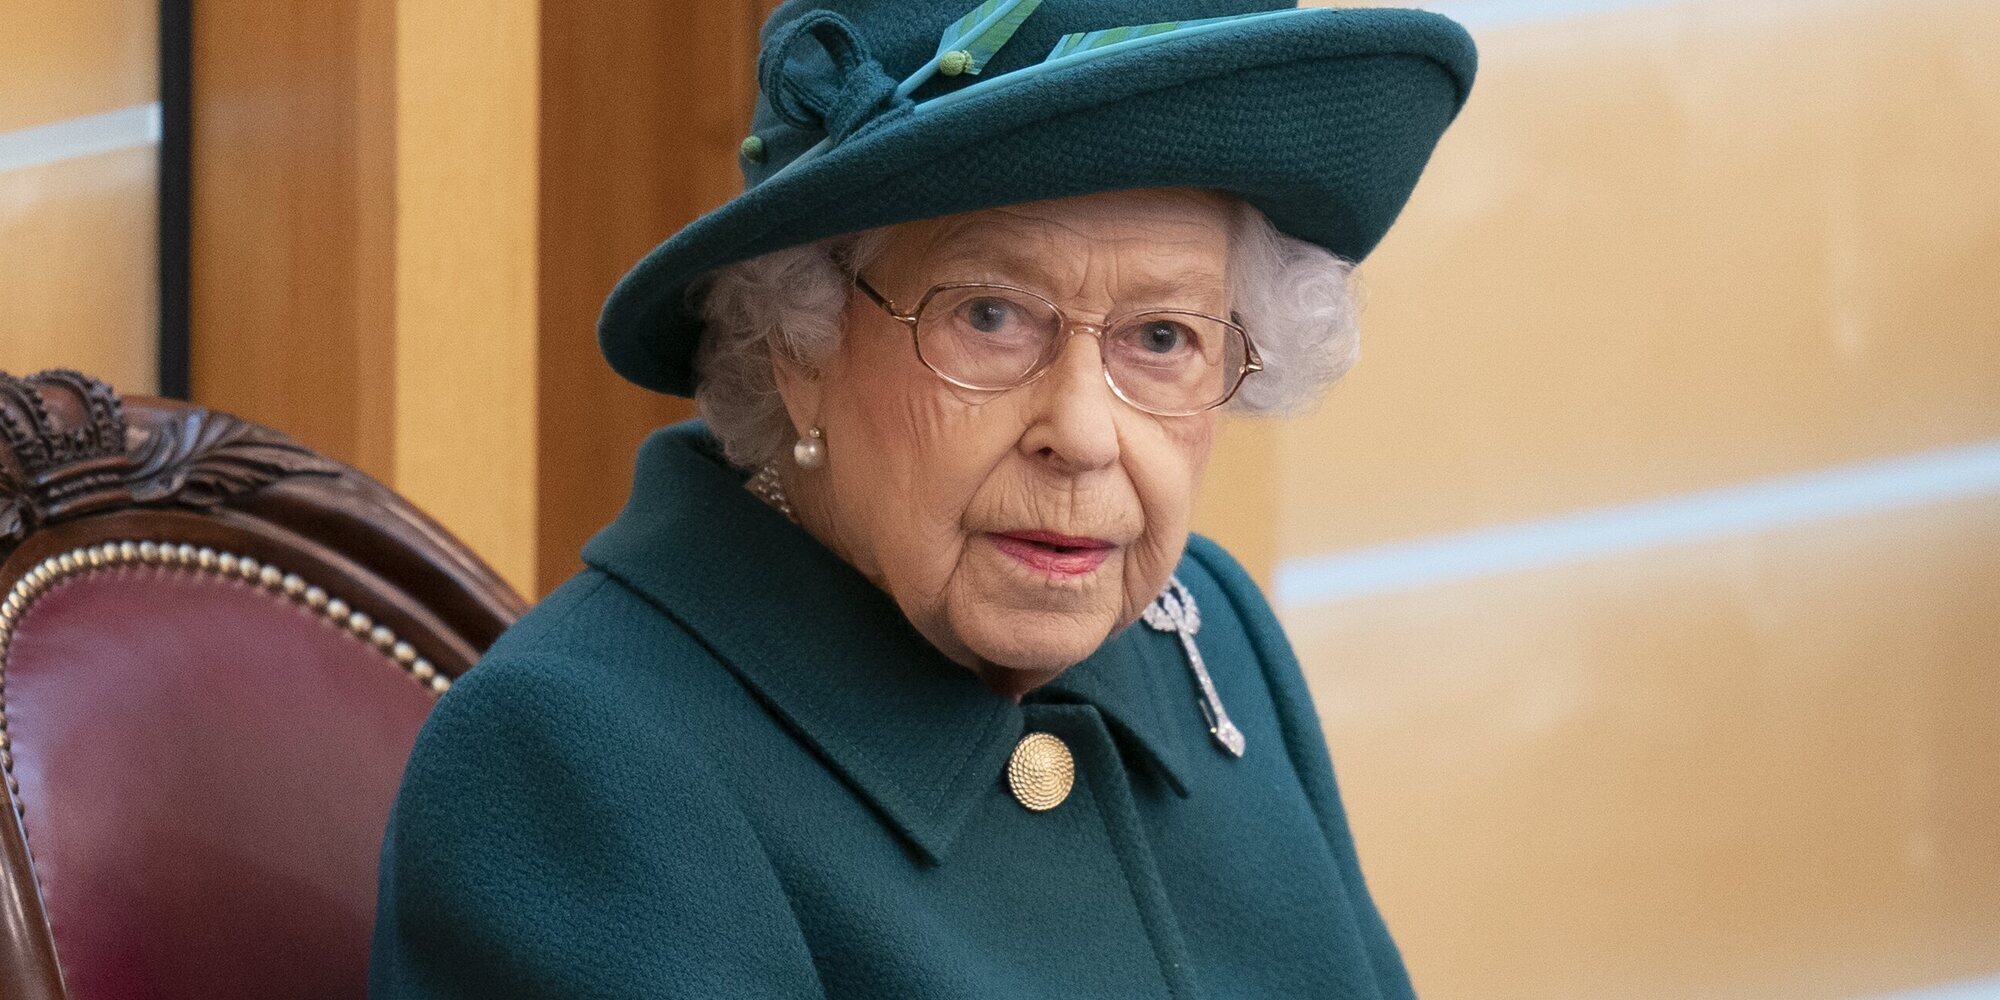 Todo sobre la 'Operación Puente de Londres': así será la despedida de la Reina Isabel II tras su muerte